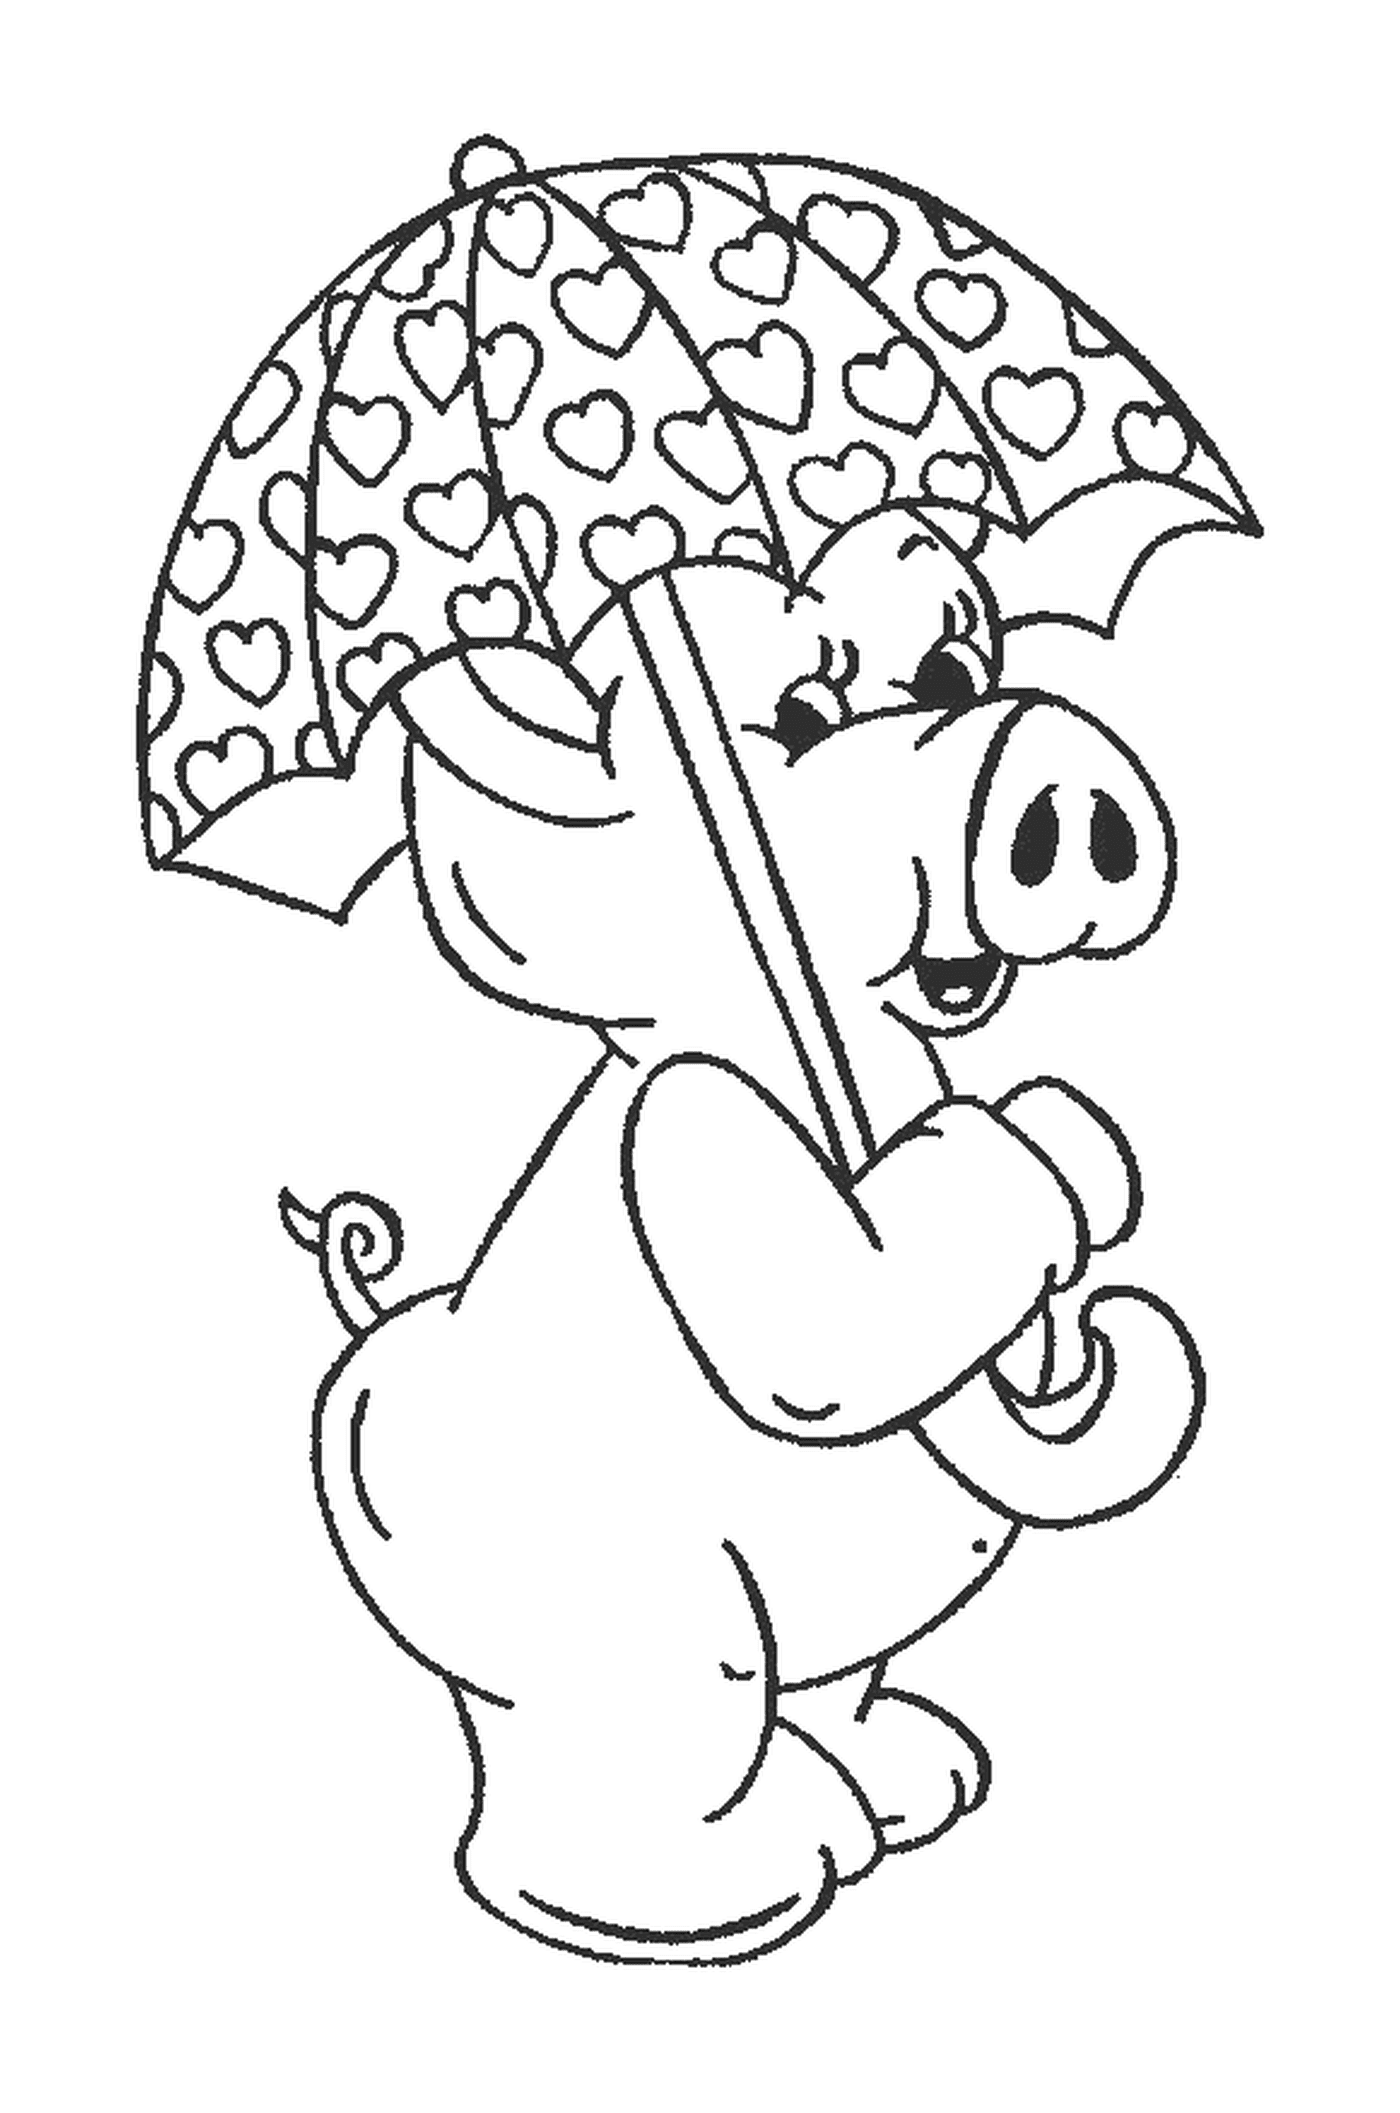  Um porco segurando um guarda-chuva na boca 